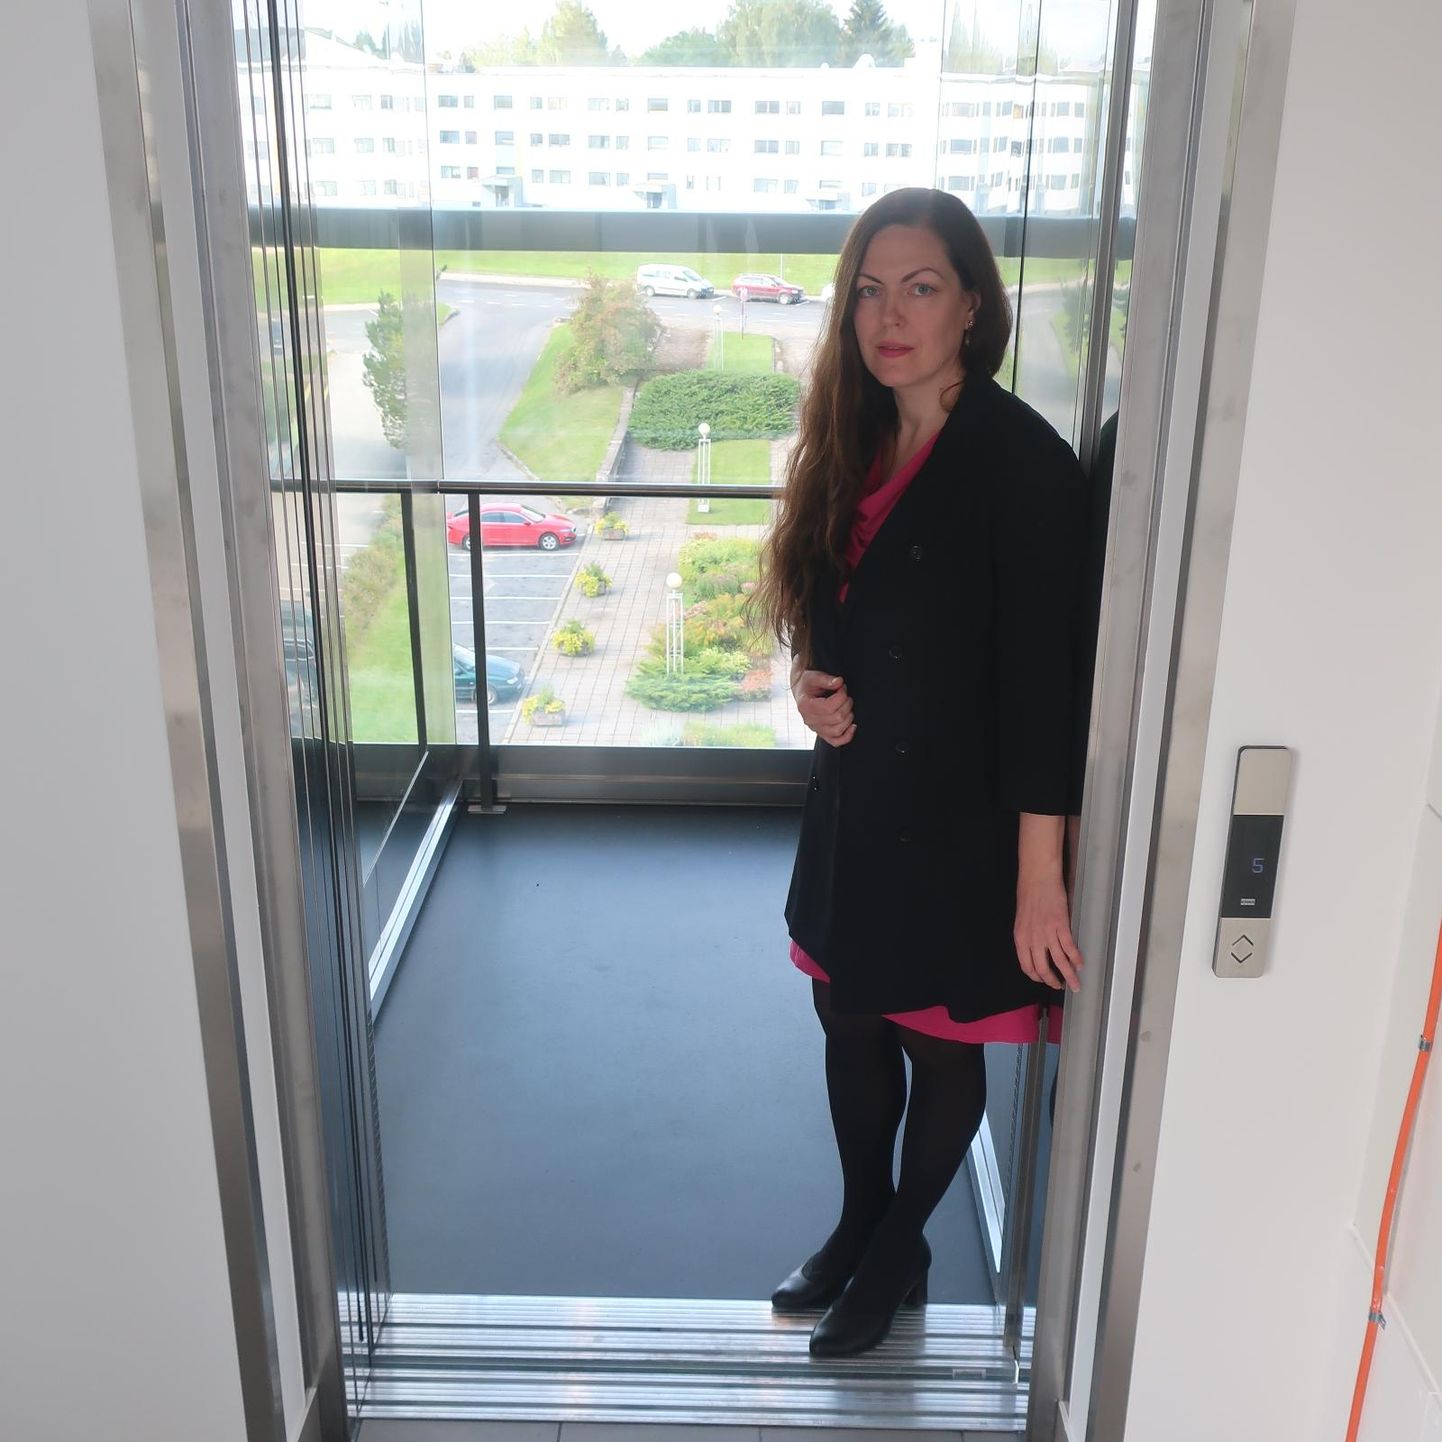 Põlva kultuuri- ja huvikeskuse direktori Eerika Margi sõnutsi pääsevad liftiga katusele esialgu üksnes kultuurikeskuse töötajad.